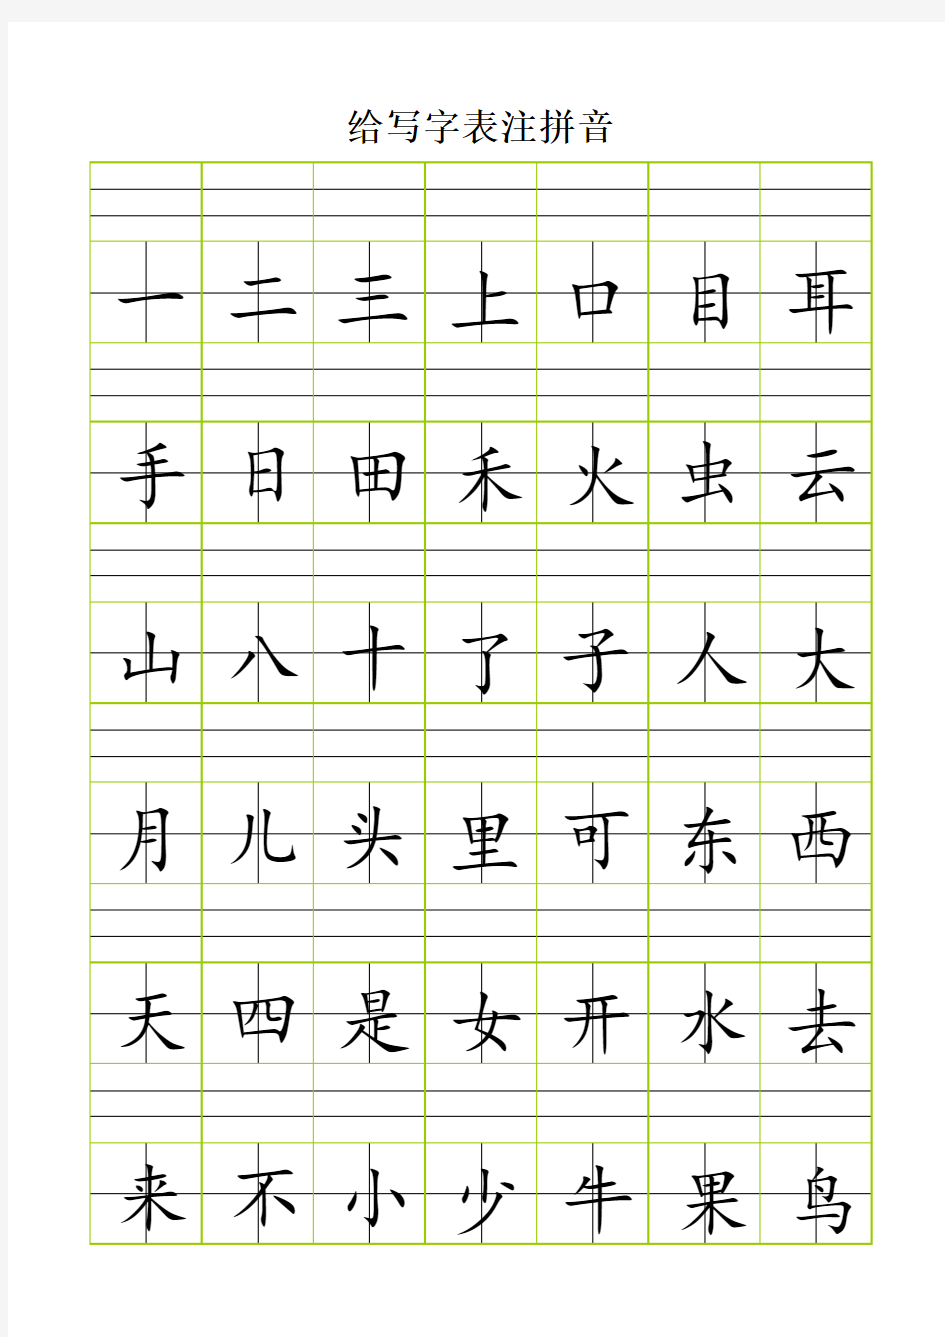 拼音田字格A4纸直接打印版(大号)可修改汉字